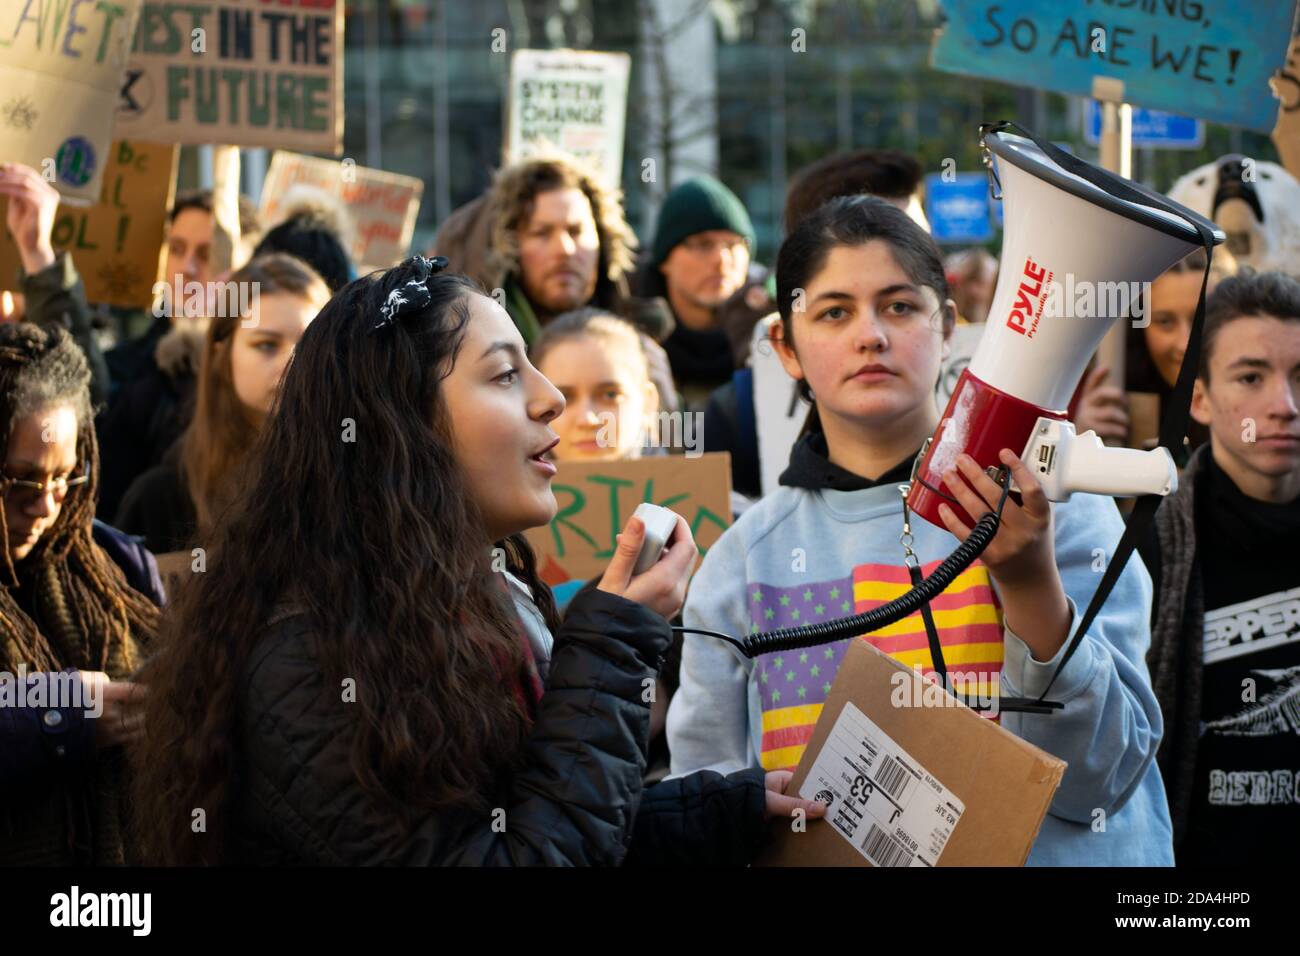 Globaler Klimaangriff auf St. Peter's Square, Manchester, Großbritannien. Jugendsprecher beim Protest. Frau spricht in ein Megaphon vor der Menge Stockfoto